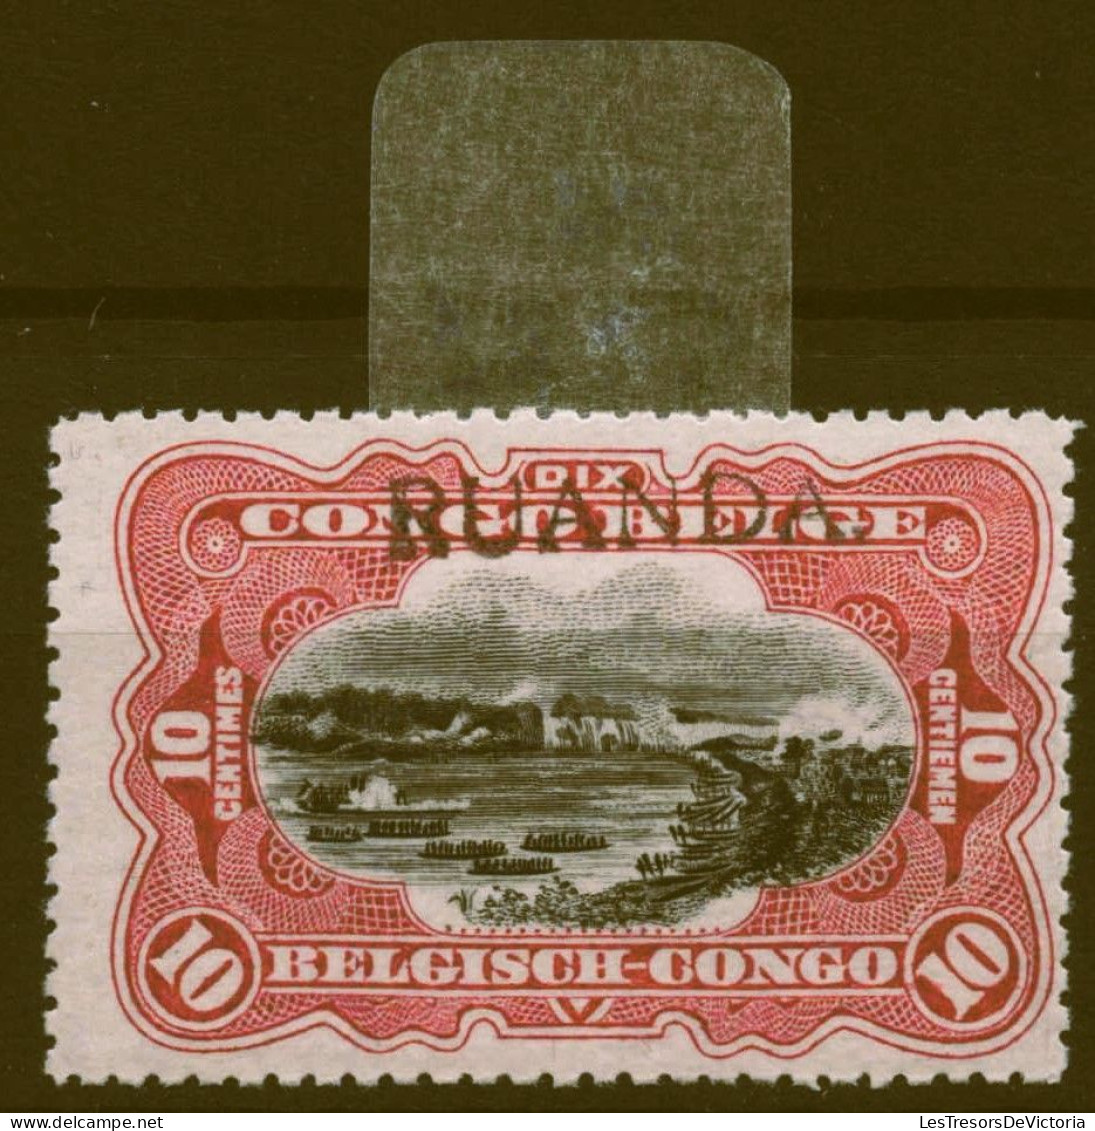 Timbre - Ruanda Urundi - 1915 - COB 10*Ruanda - Cote 345 - Neufs